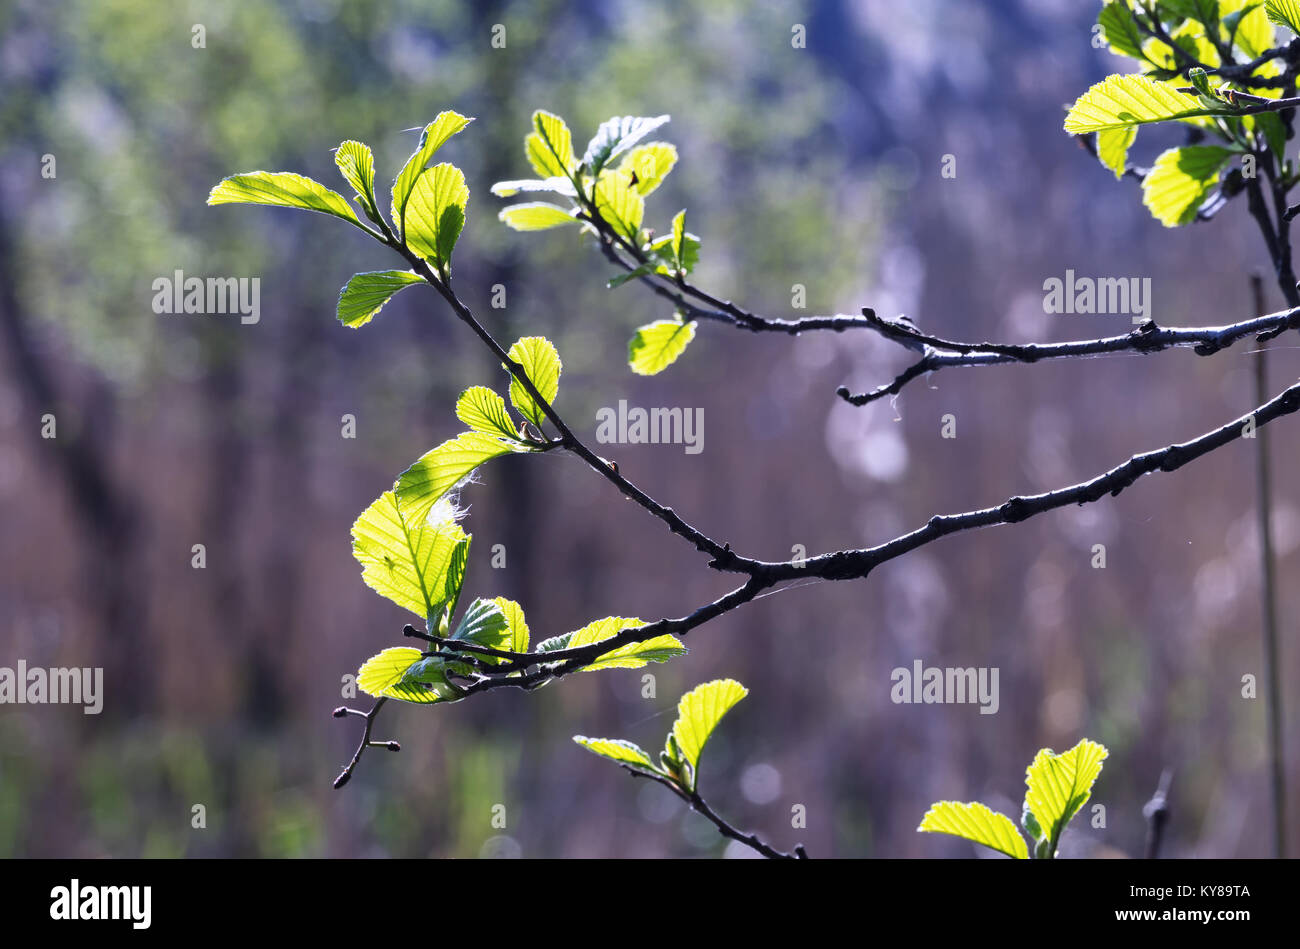 Les brindilles de Hazel avec de jeunes feuilles vertes au printemps. Les feuilles sont mis en lumière par le soleil. Arrière-plan flou, selective focus. Banque D'Images